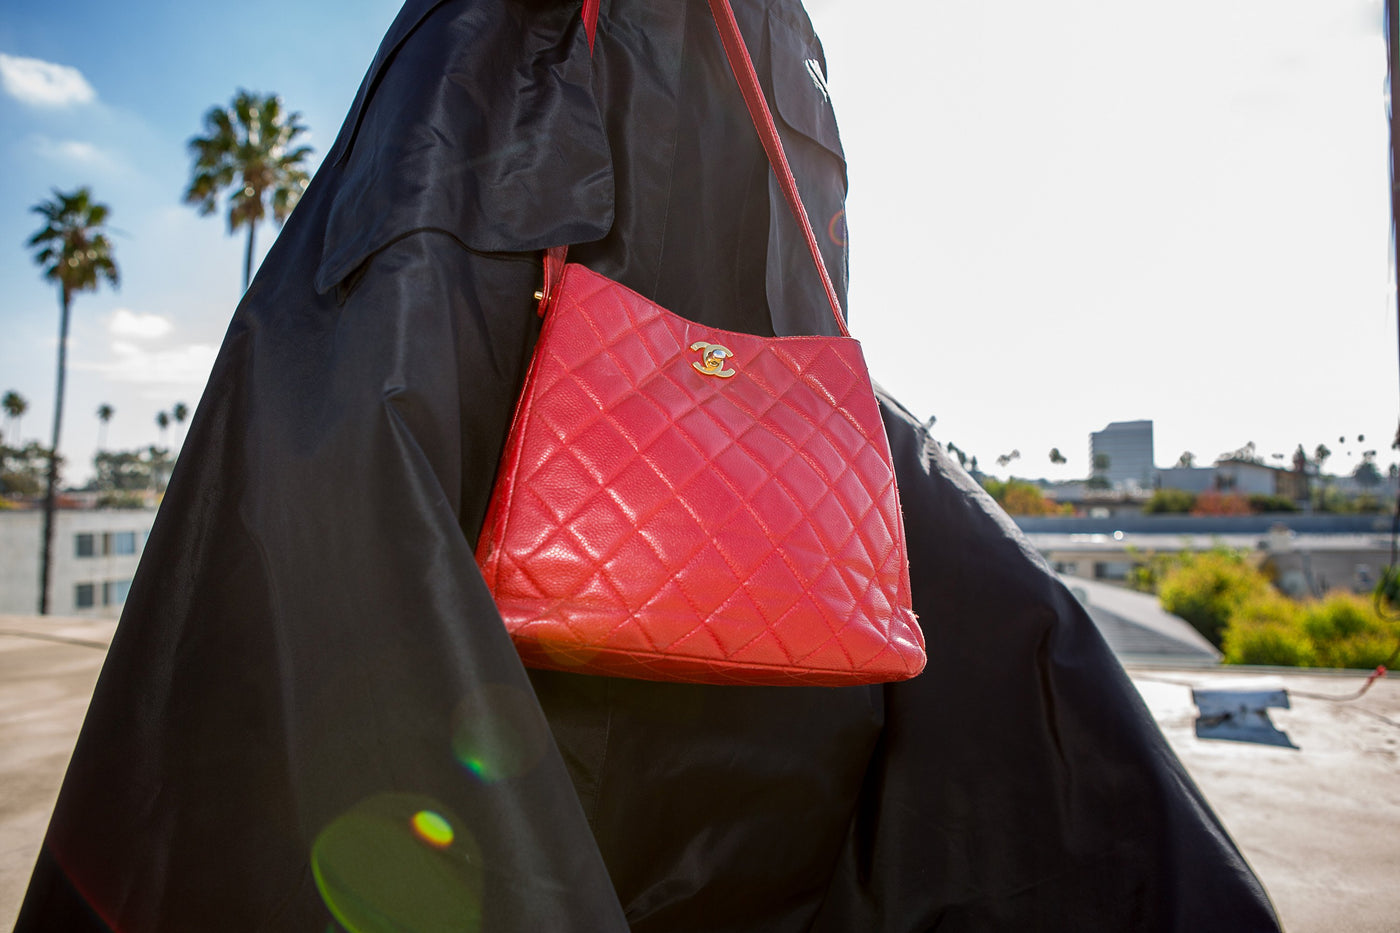 Louis Vuitton Handbags – Clothes Heaven Since 1983